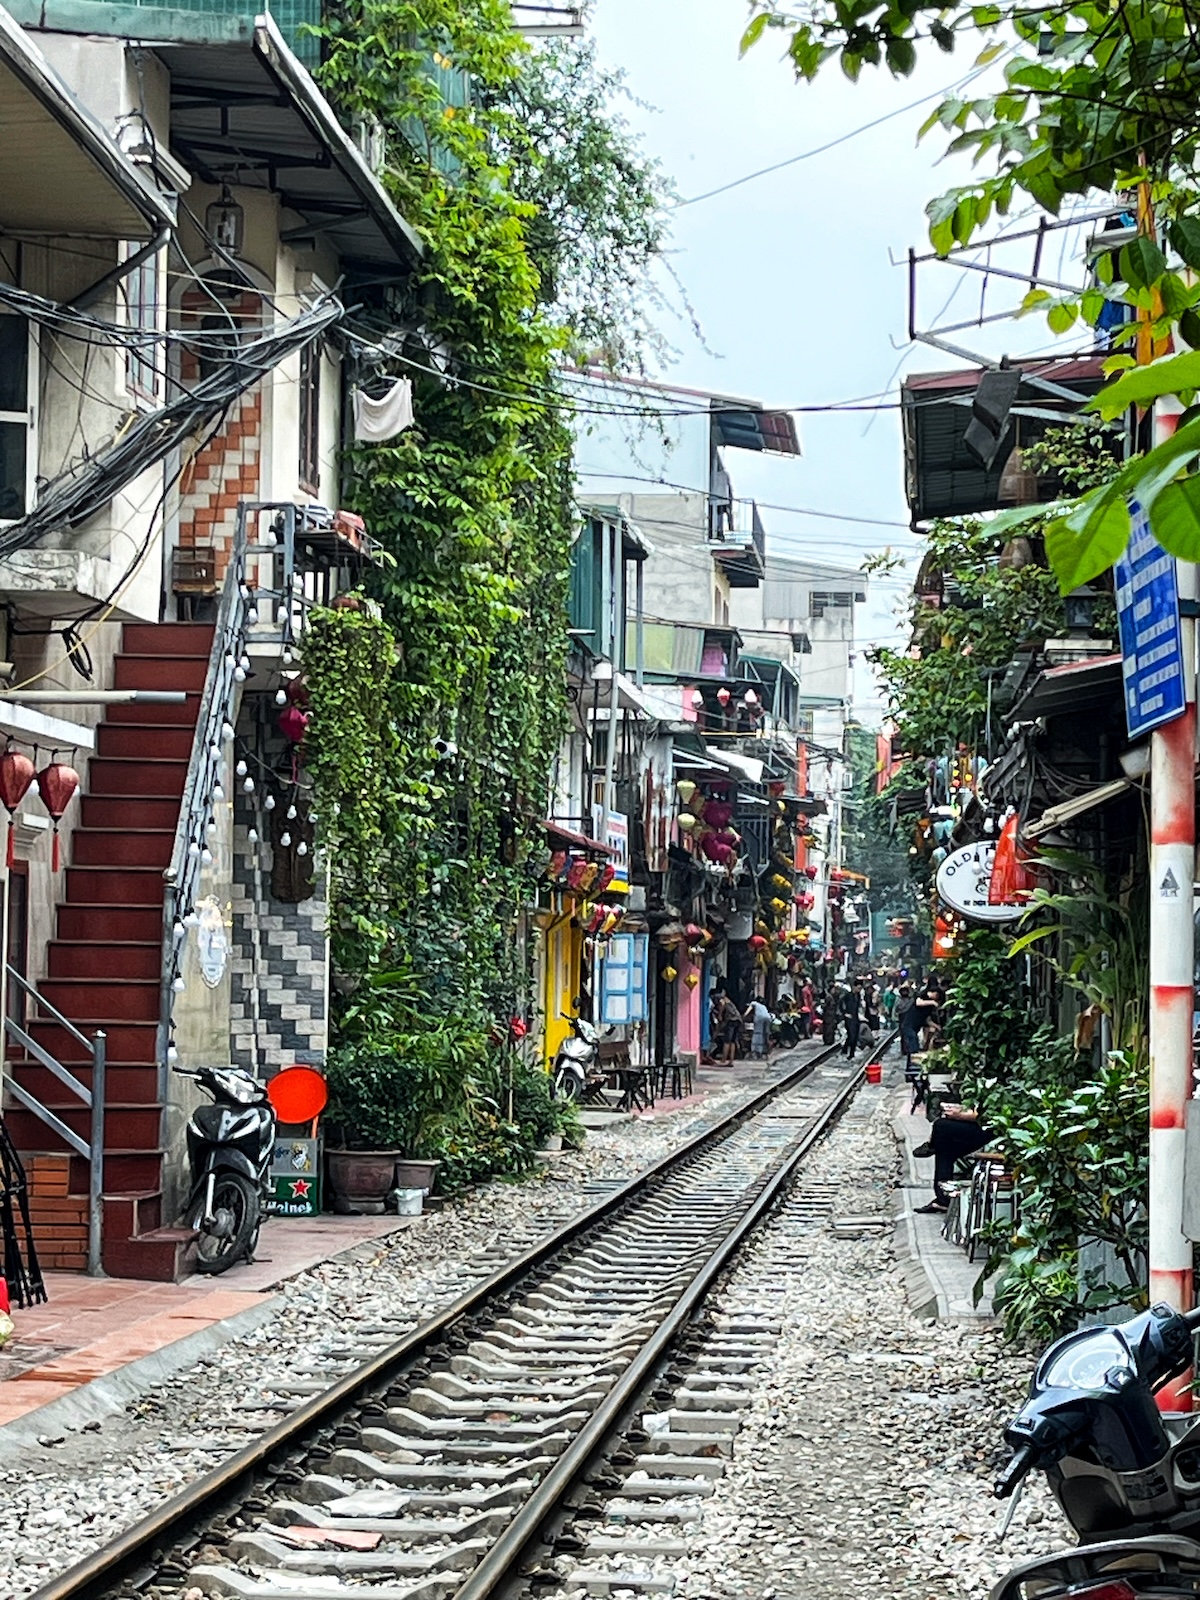 A train track runs through a busy street in Hanoi, Vietnam